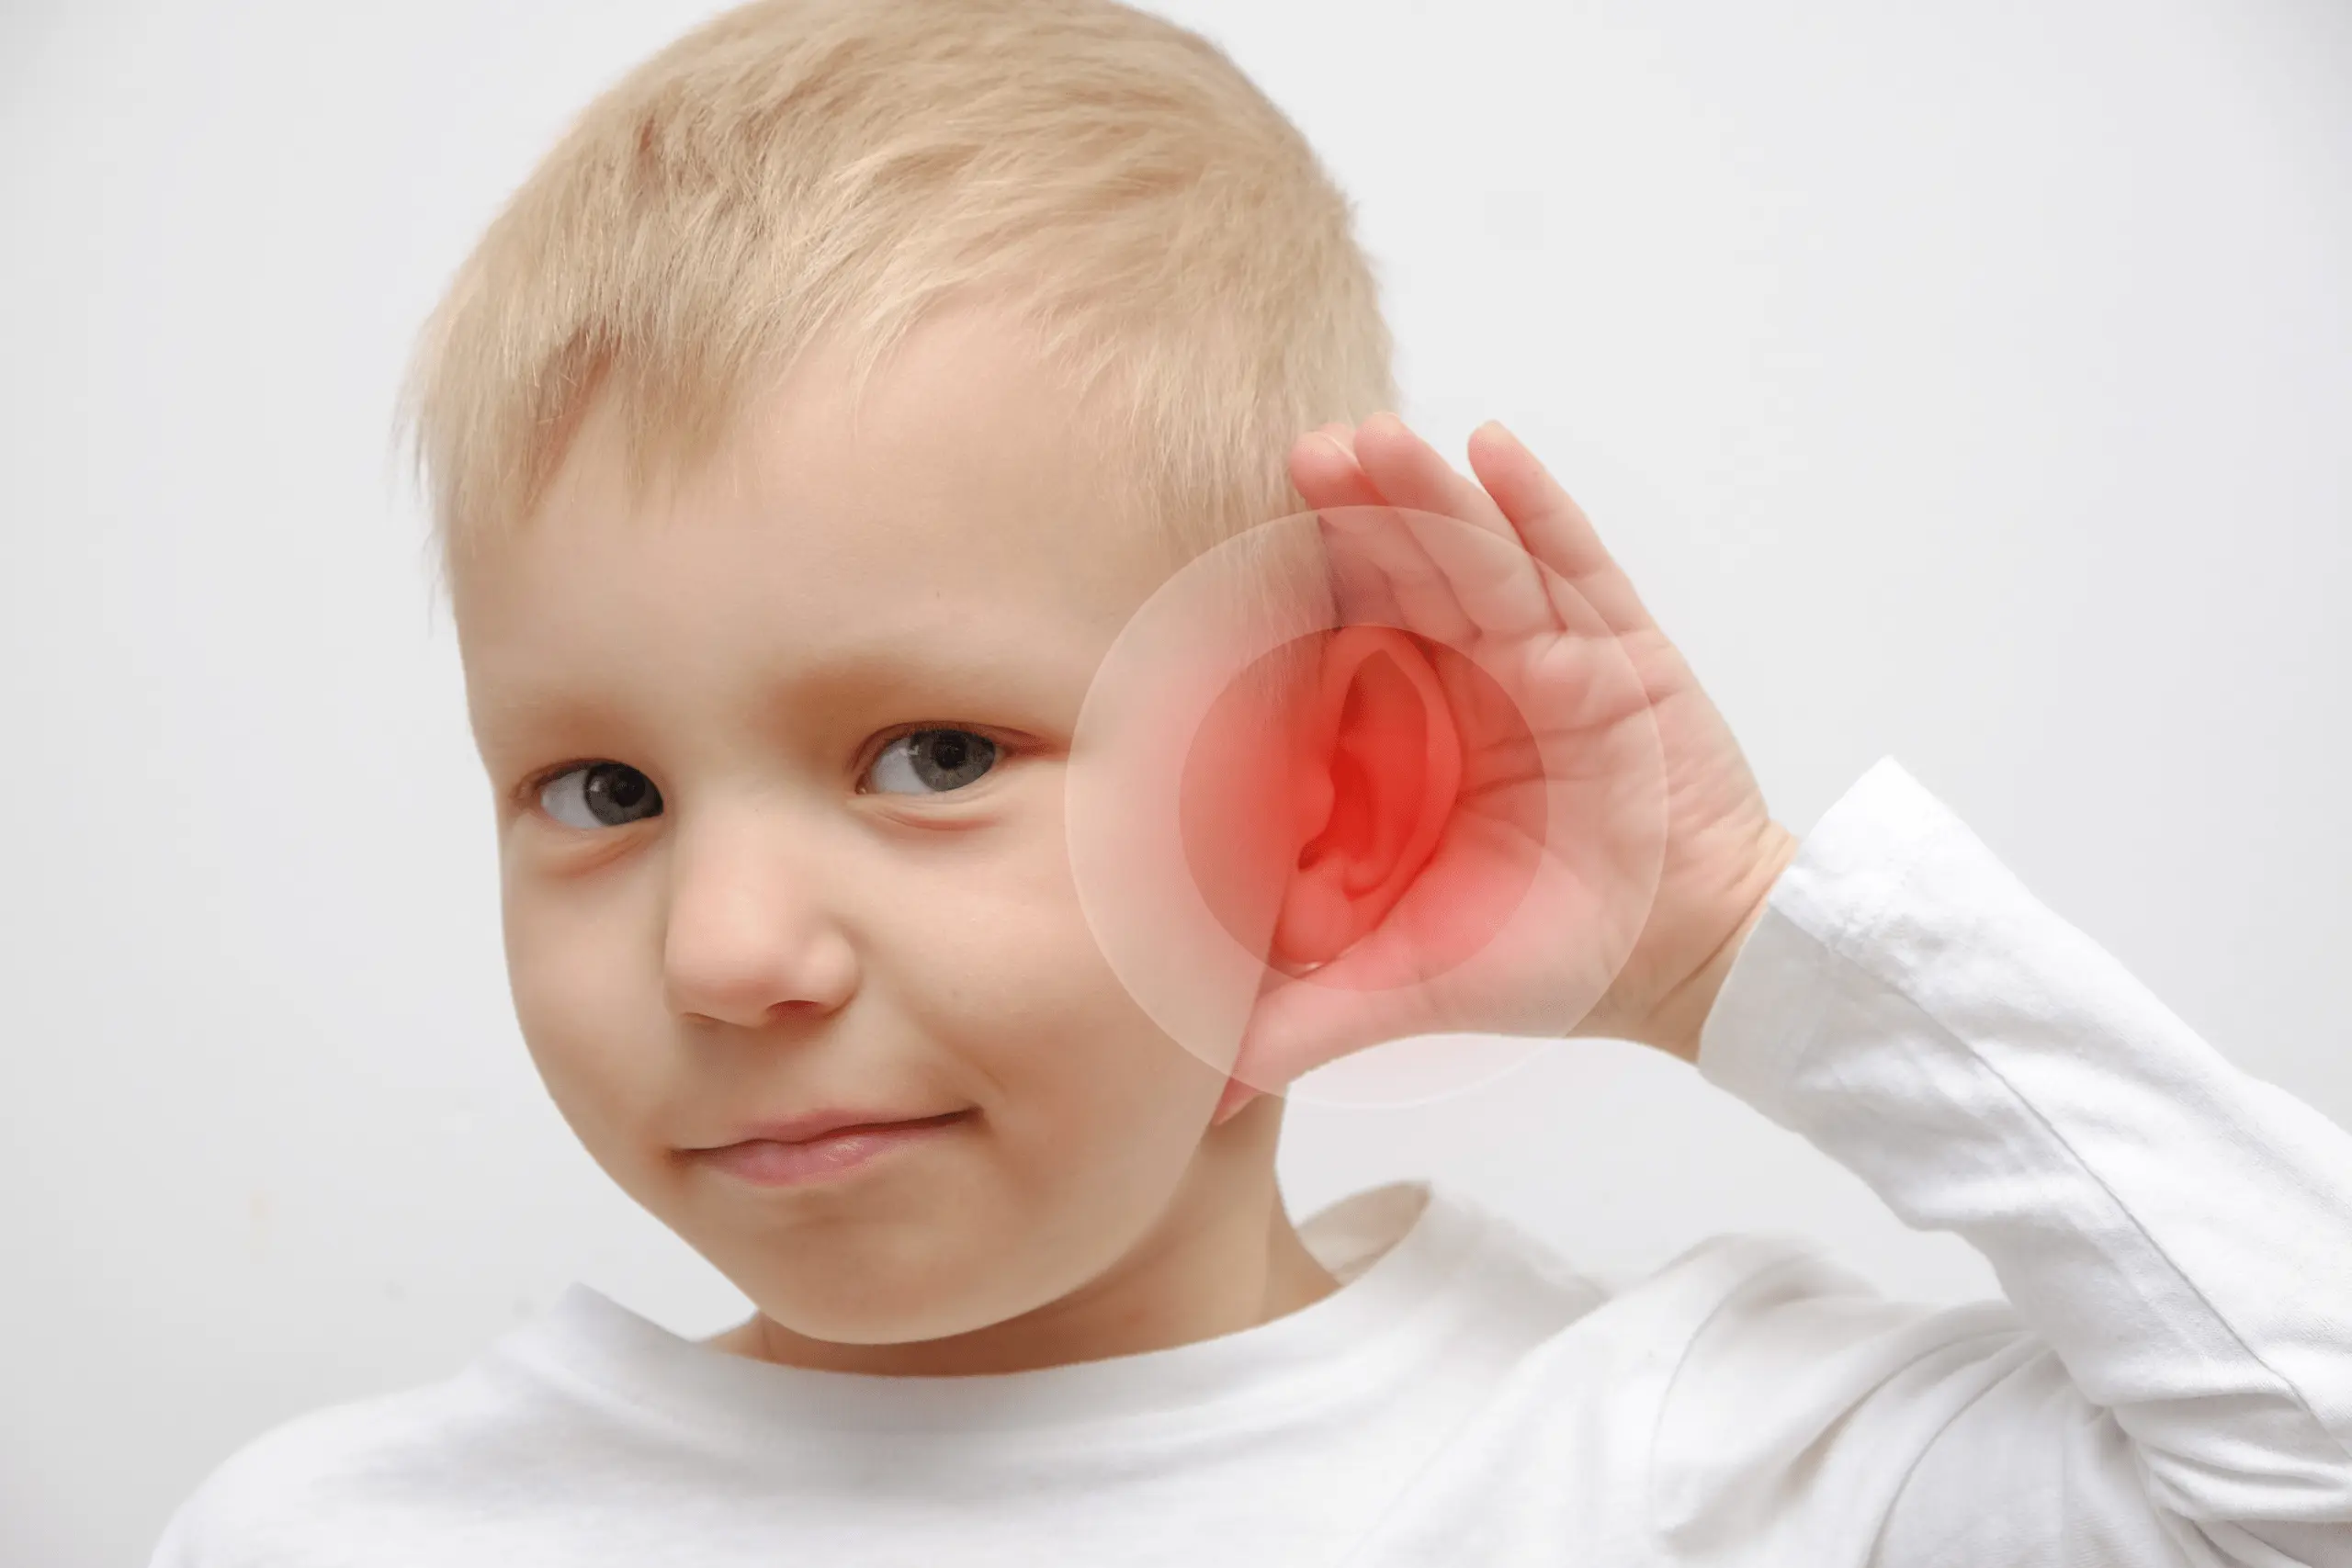 Marmed - Aparaty Słuchowe - Badanie Słuchu - Wysiękowe Zapalenie Ucha